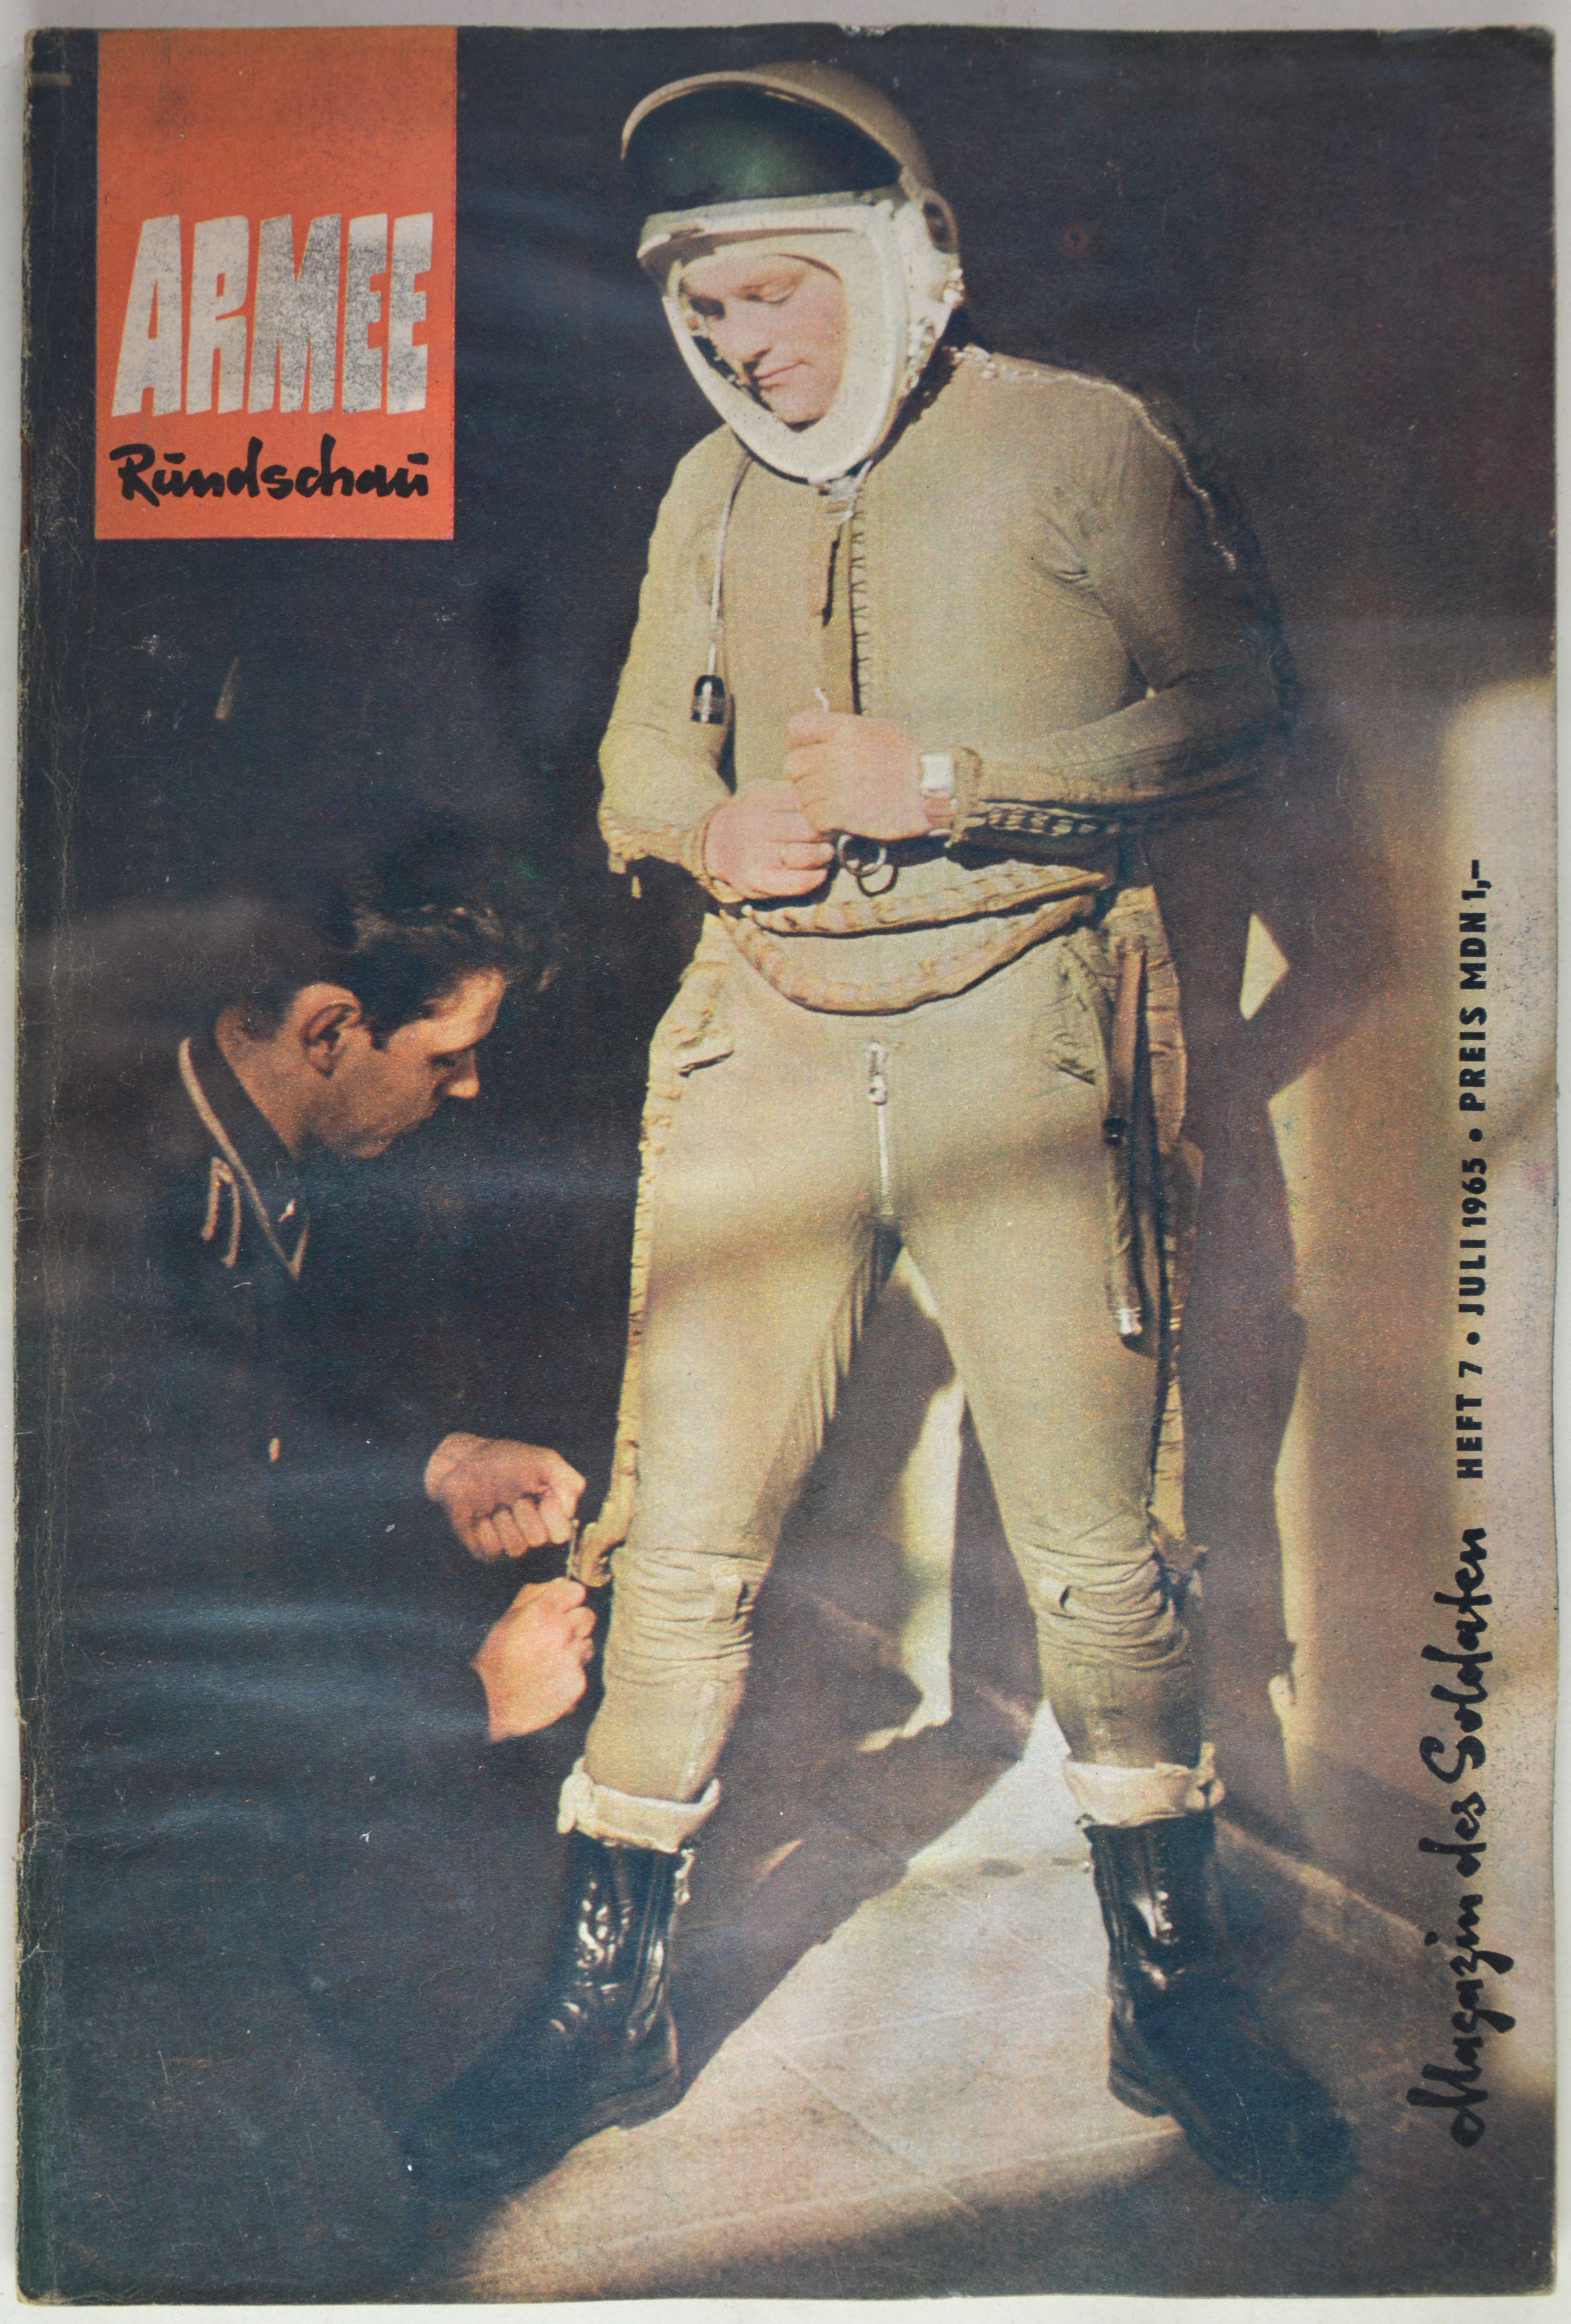 Armeerundschau - Magazin des Soldaten (1965), Heft 7 (DDR Geschichtsmuseum im Dokumentationszentrum Perleberg CC BY-SA)